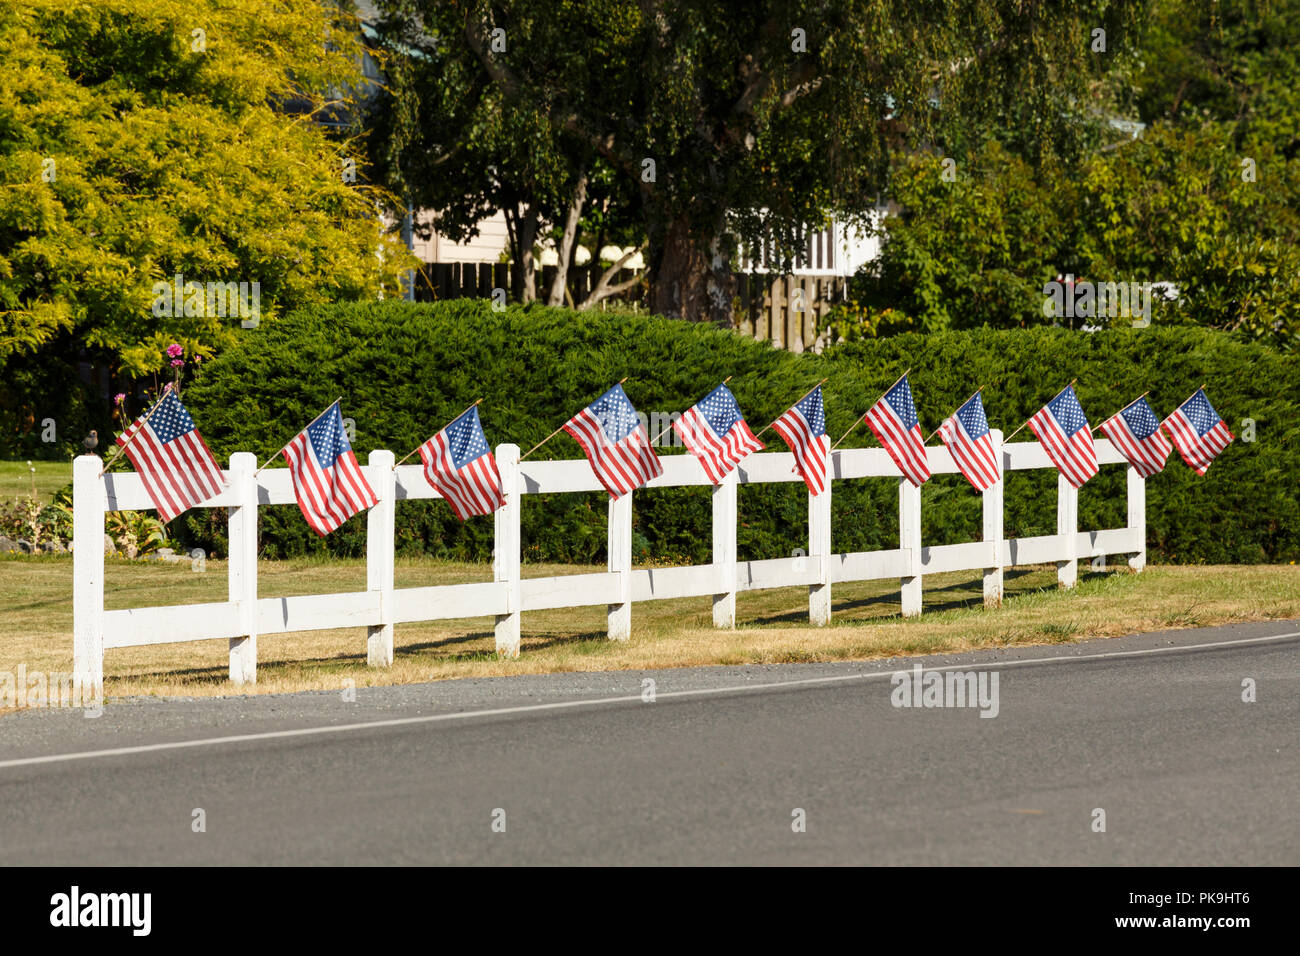 Patriotische Anzeige der amerikanische Flaggen schwenkten auf weißen Lattenzaun neben einer Straße. Typische Kleinstadt 4. Juli Unabhängigkeitstag Dekorationen. Stockfoto